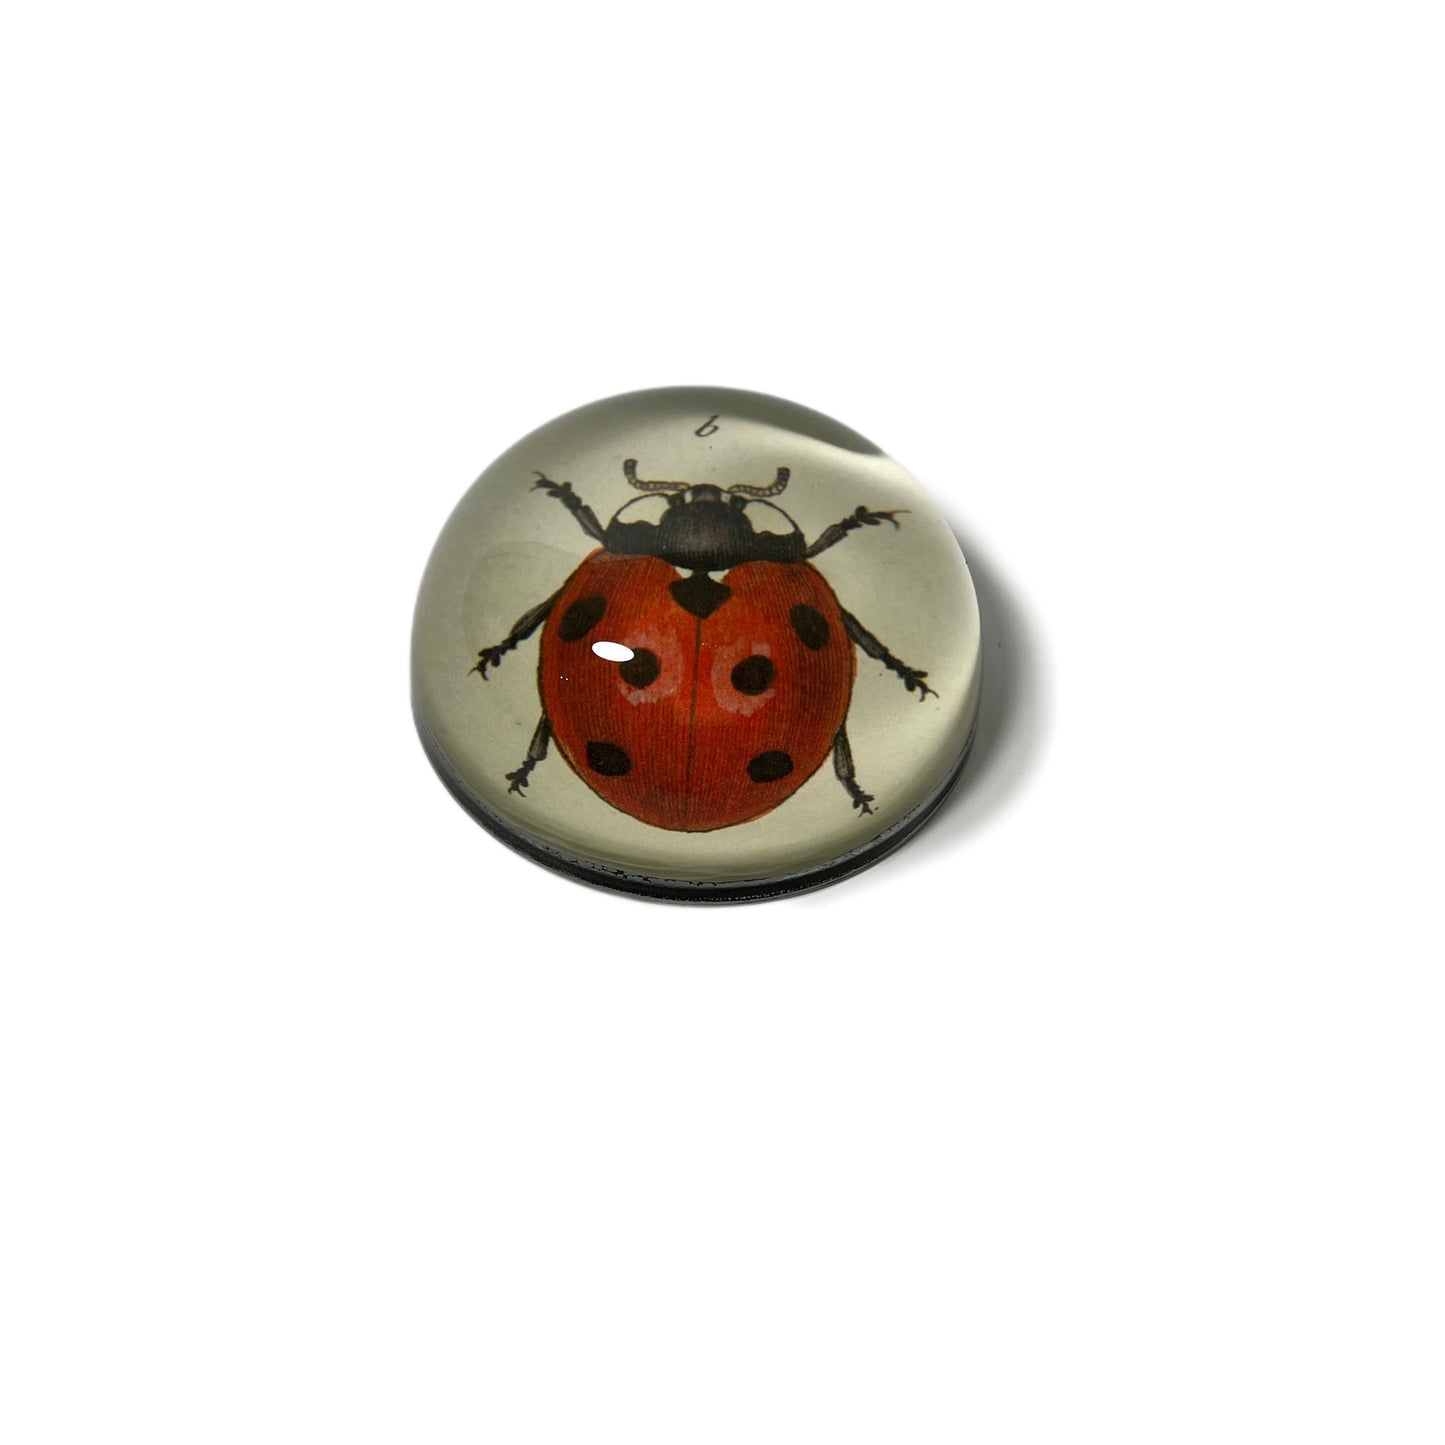 【JOHN DERIAN】デコパージュペーパーウェイト Red Ladybug